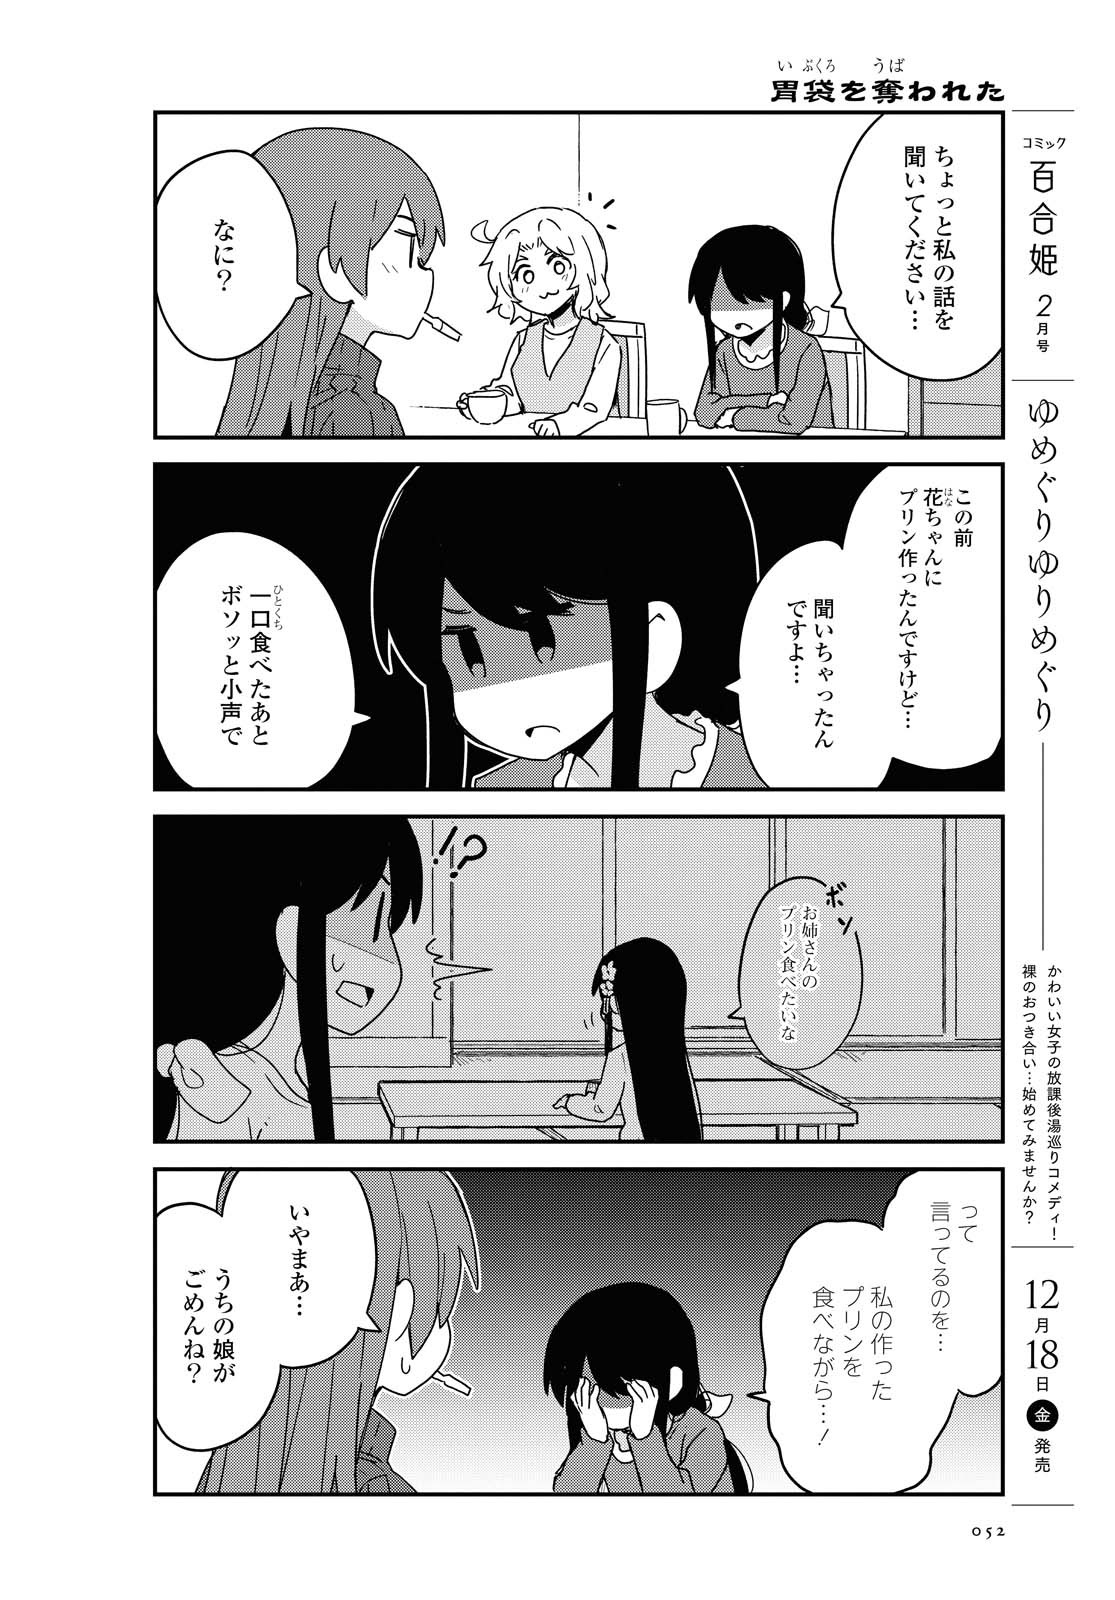 Watashi ni Tenshi ga Maiorita! - Chapter 75 - Page 2